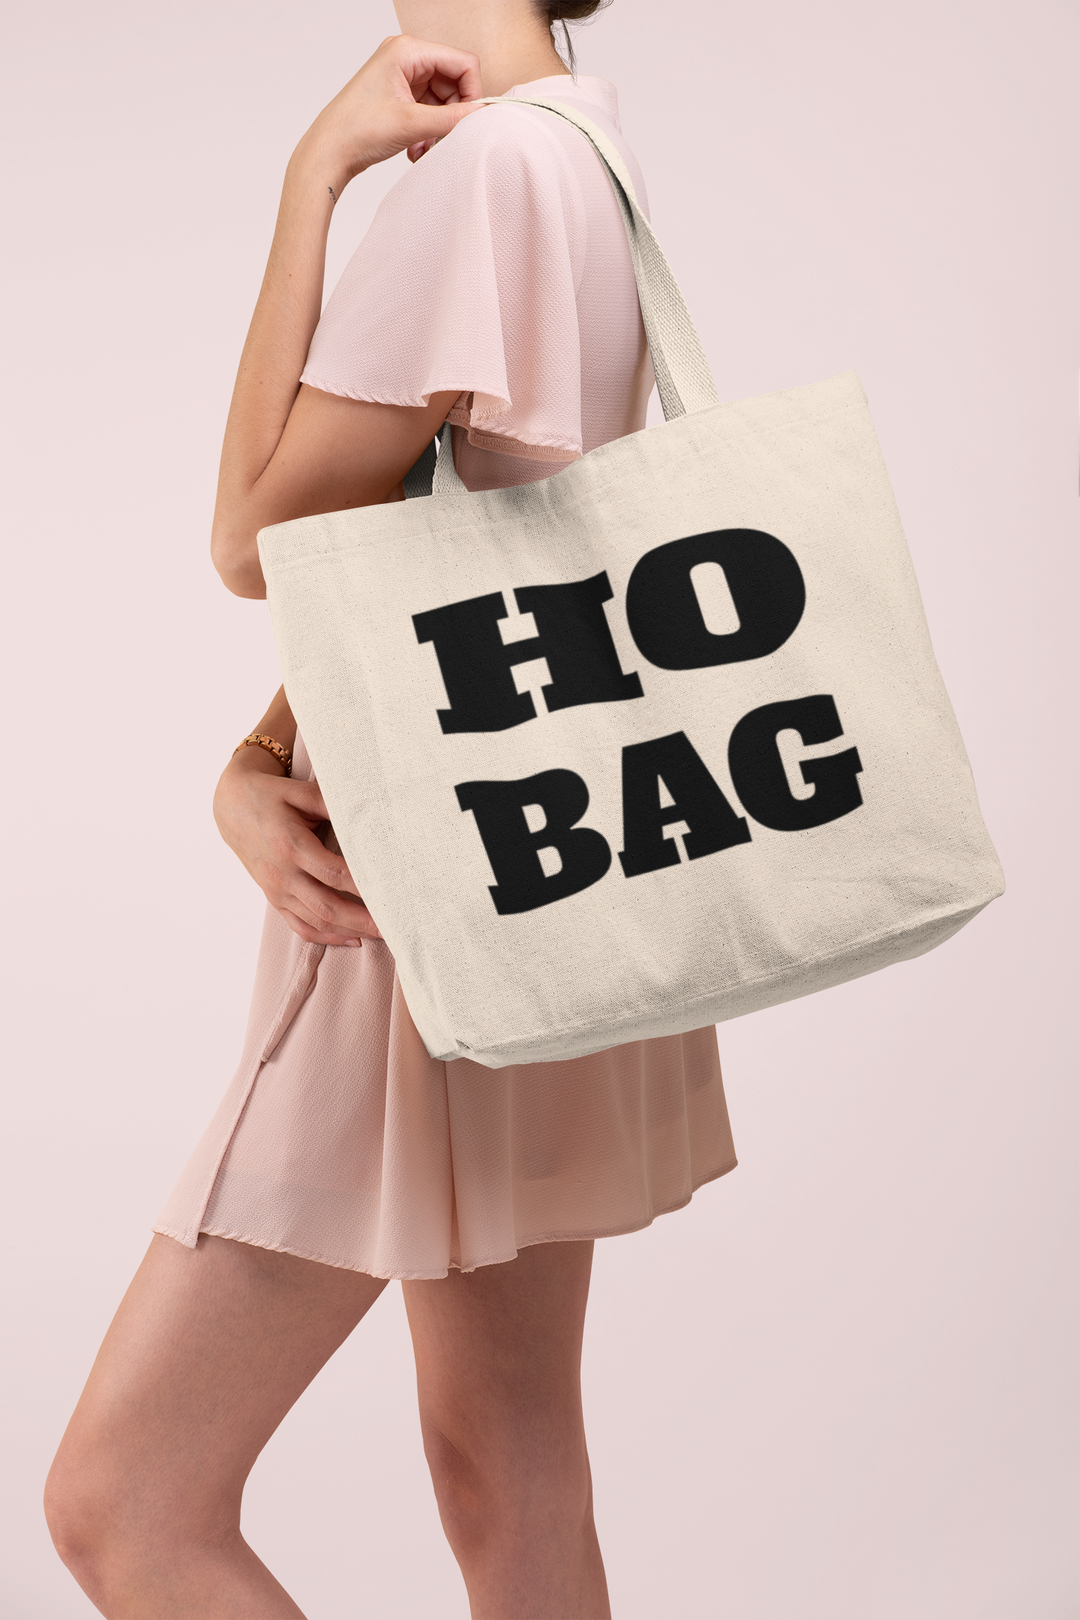 Ho Bag Funny Tote Bag